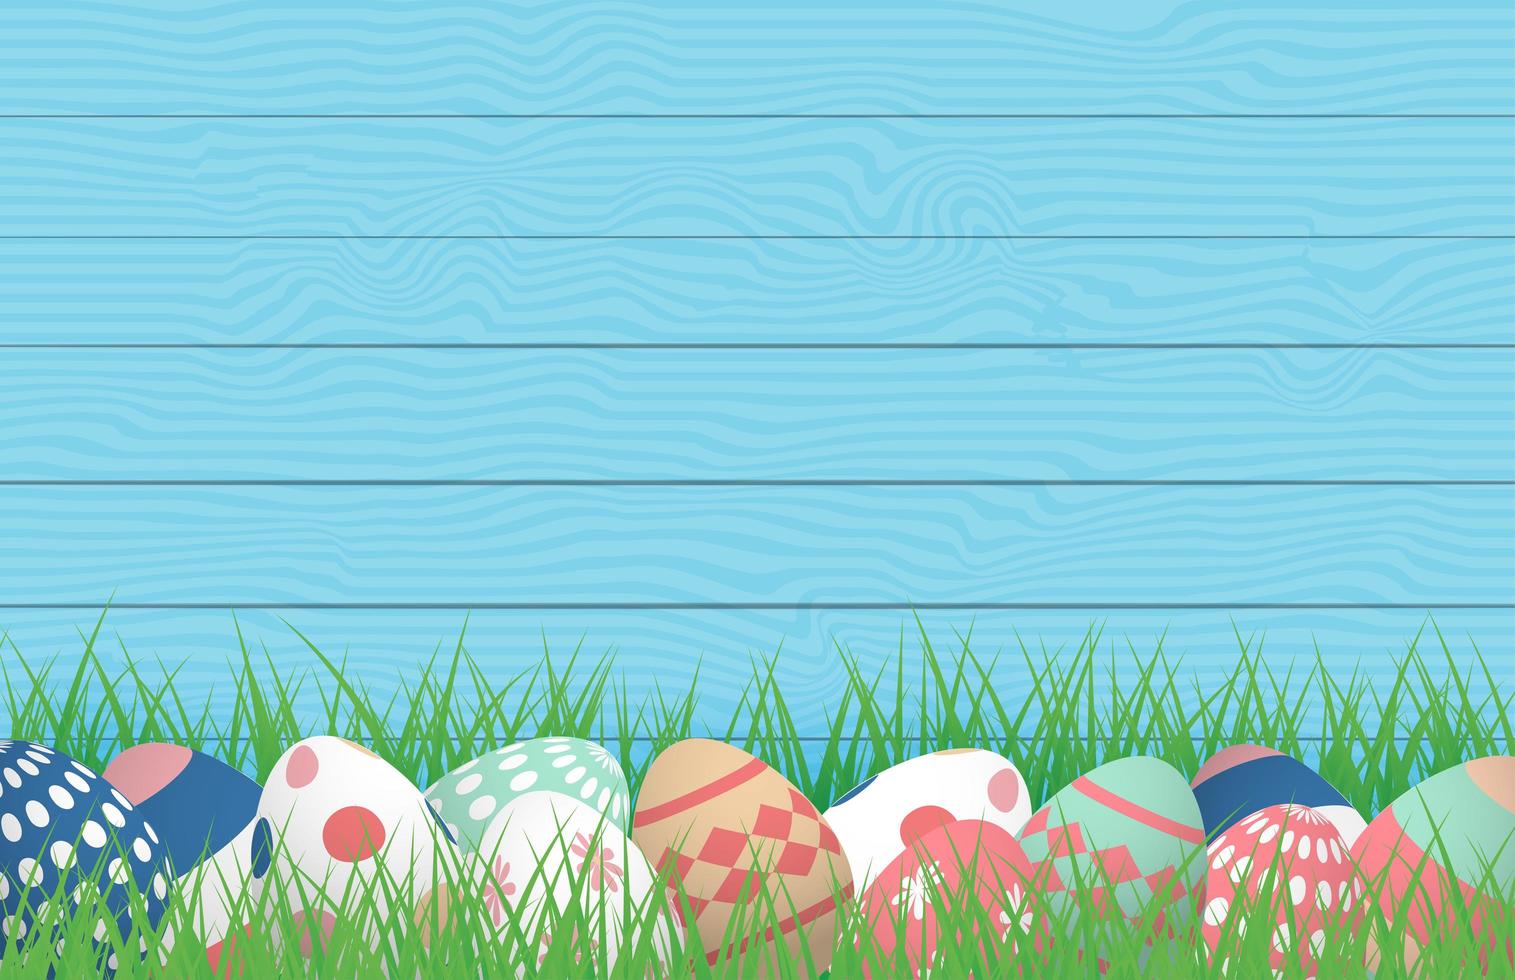 Pasen-poster met eieren in gras tegen hout vector